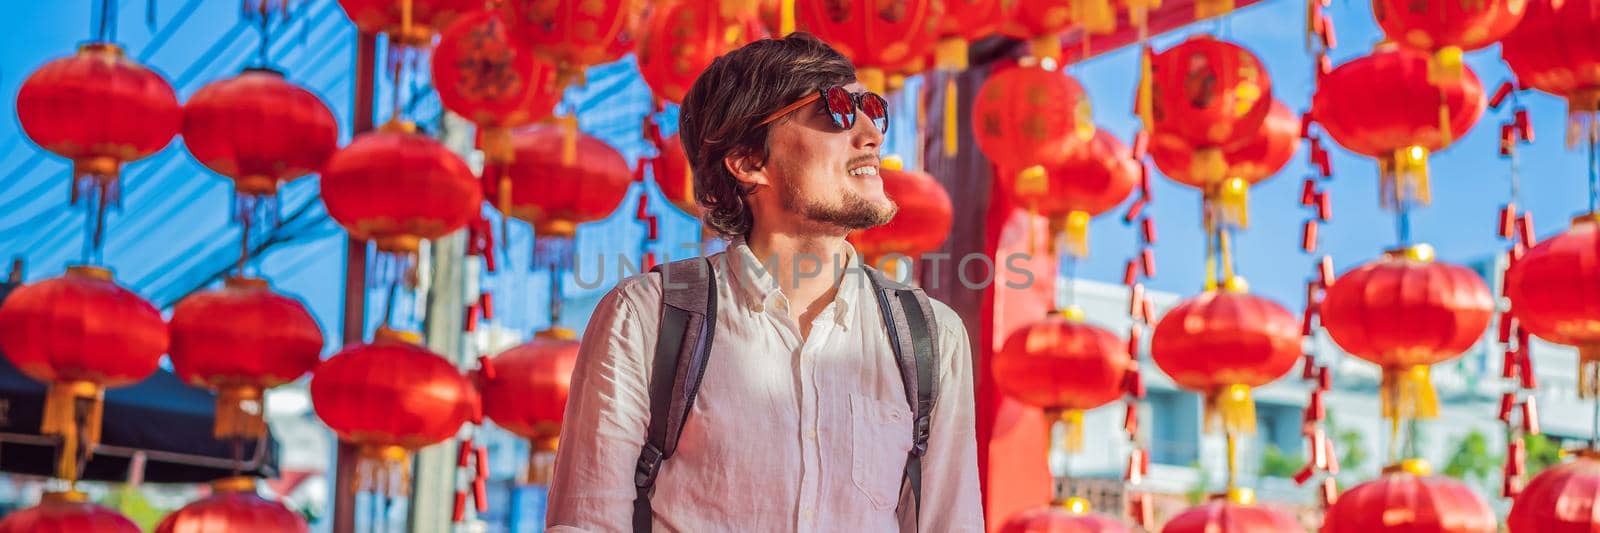 Man celebrate Chinese New Year look at Chinese red lanterns. Chinese lanterns BANNER, LONG FORMAT by galitskaya